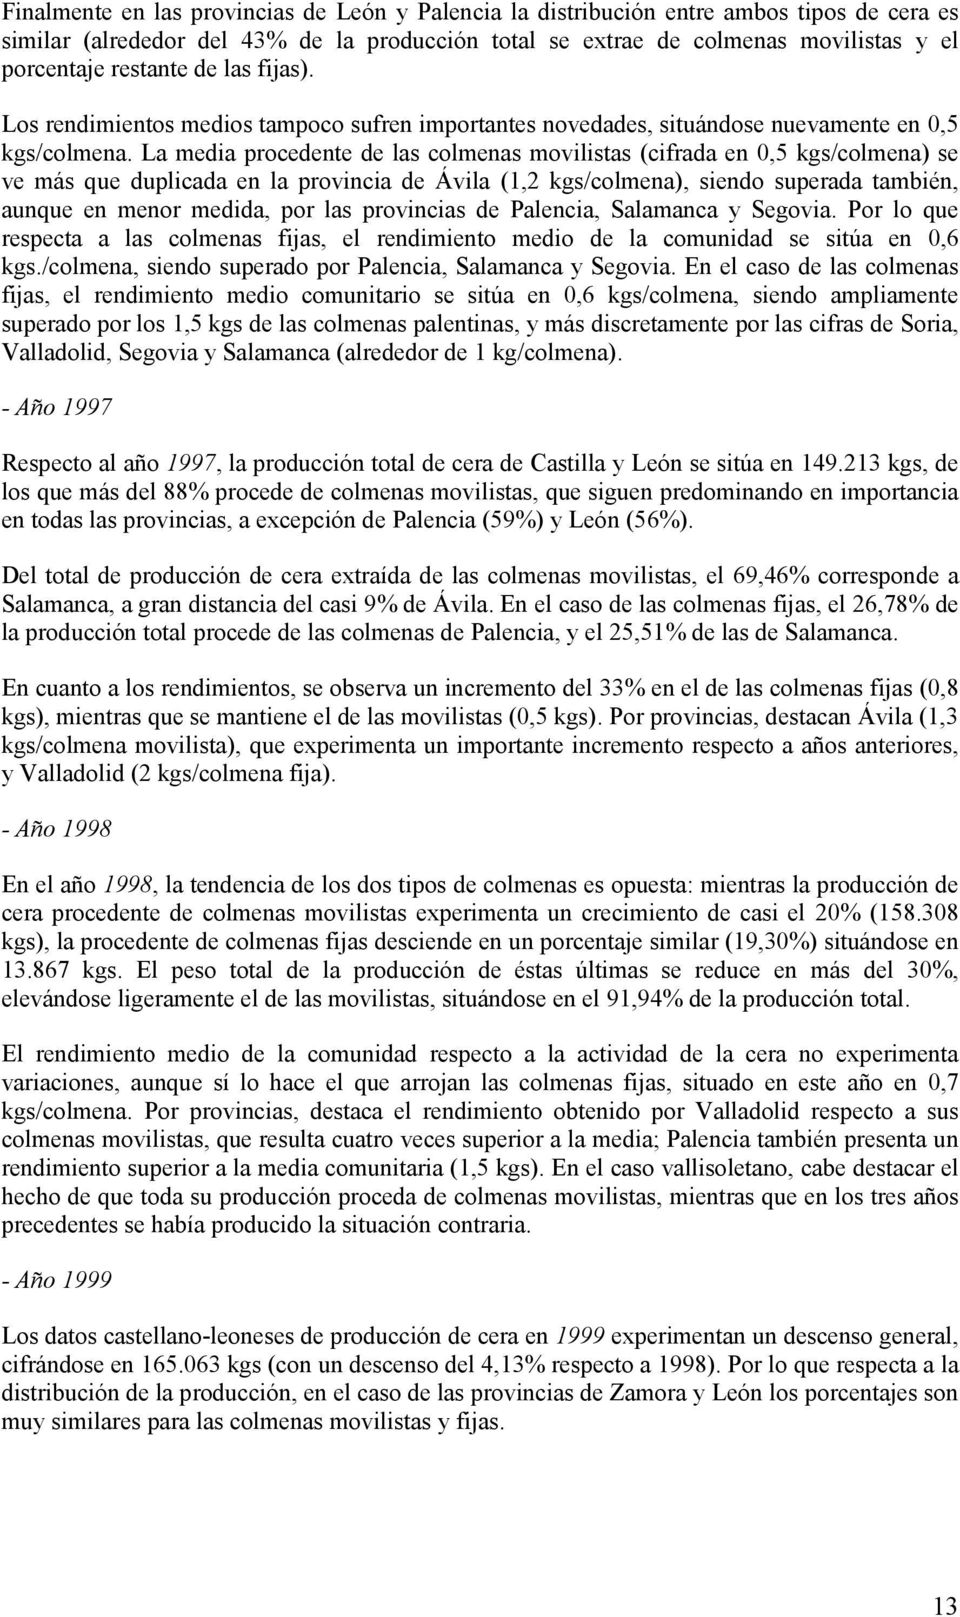 La media procedente de las colmenas movilistas (cifrada en 0,5 kgs/colmena) se ve más que duplicada en la provincia de Ávila (1,2 kgs/colmena), siendo superada también, aunque en menor medida, por